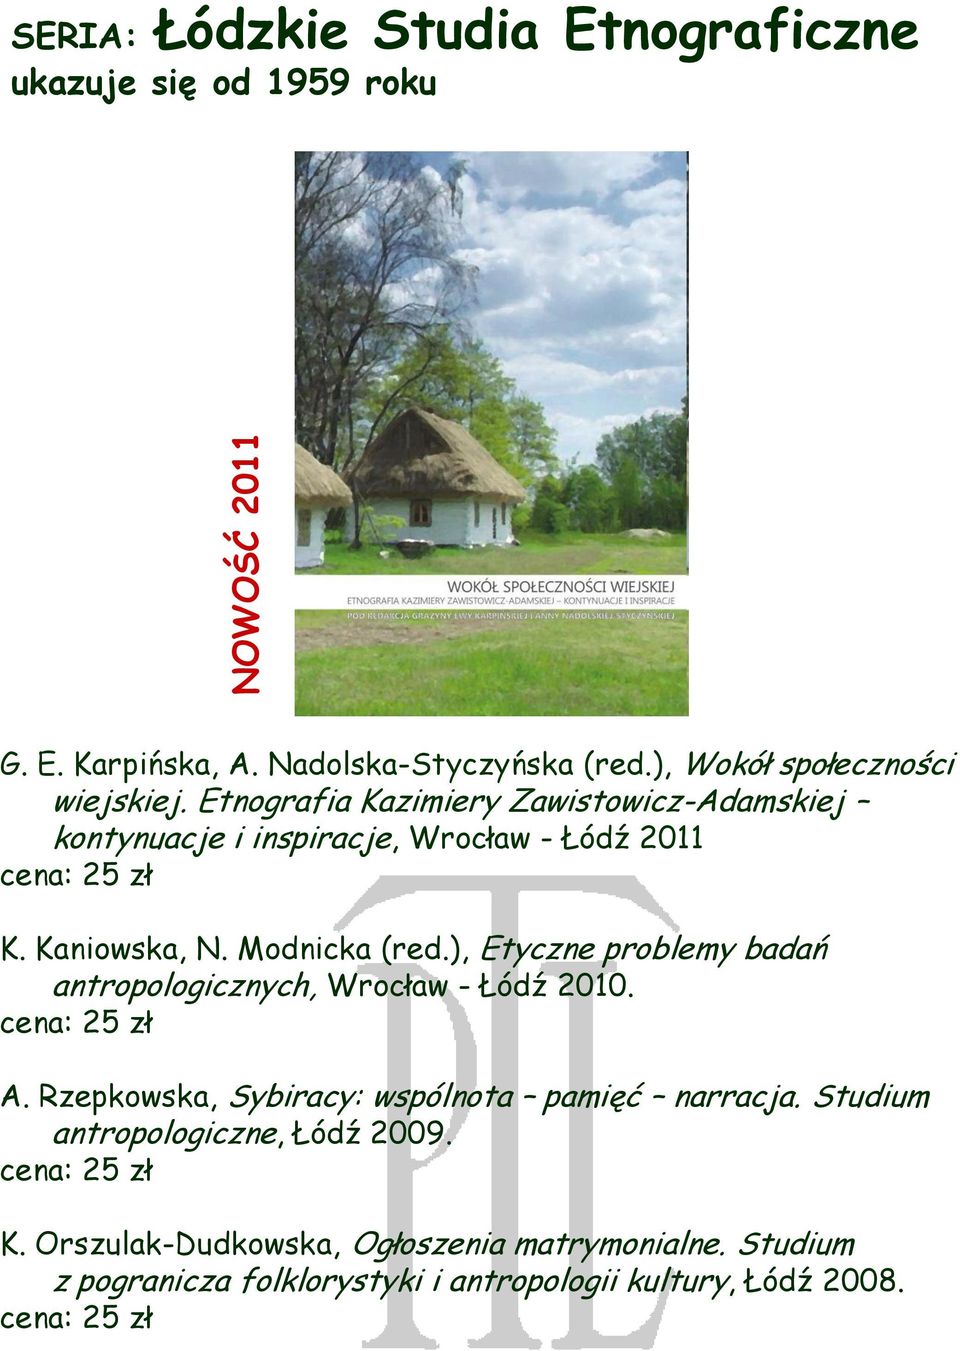 Kaniowska, N. Modnicka (red.), Etyczne problemy badań antropologicznych, Wrocław - Łódź 2010. A.